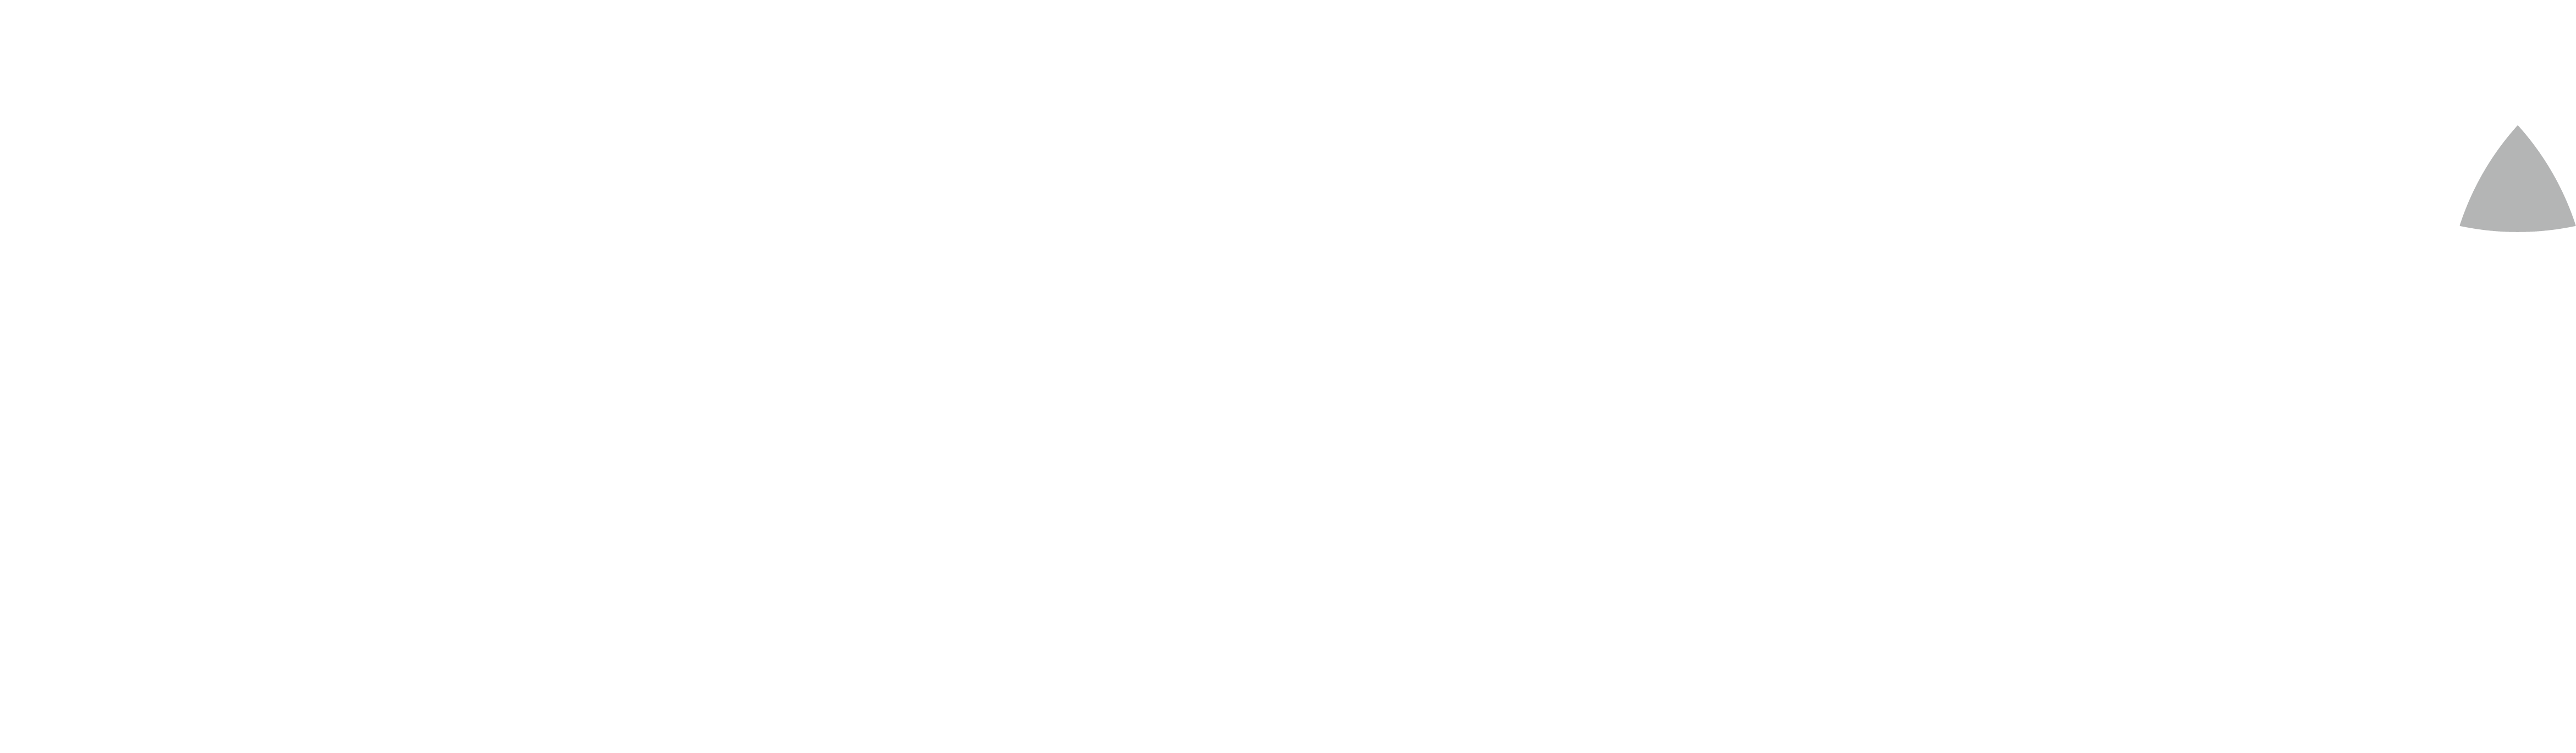 keego-logo-blanco